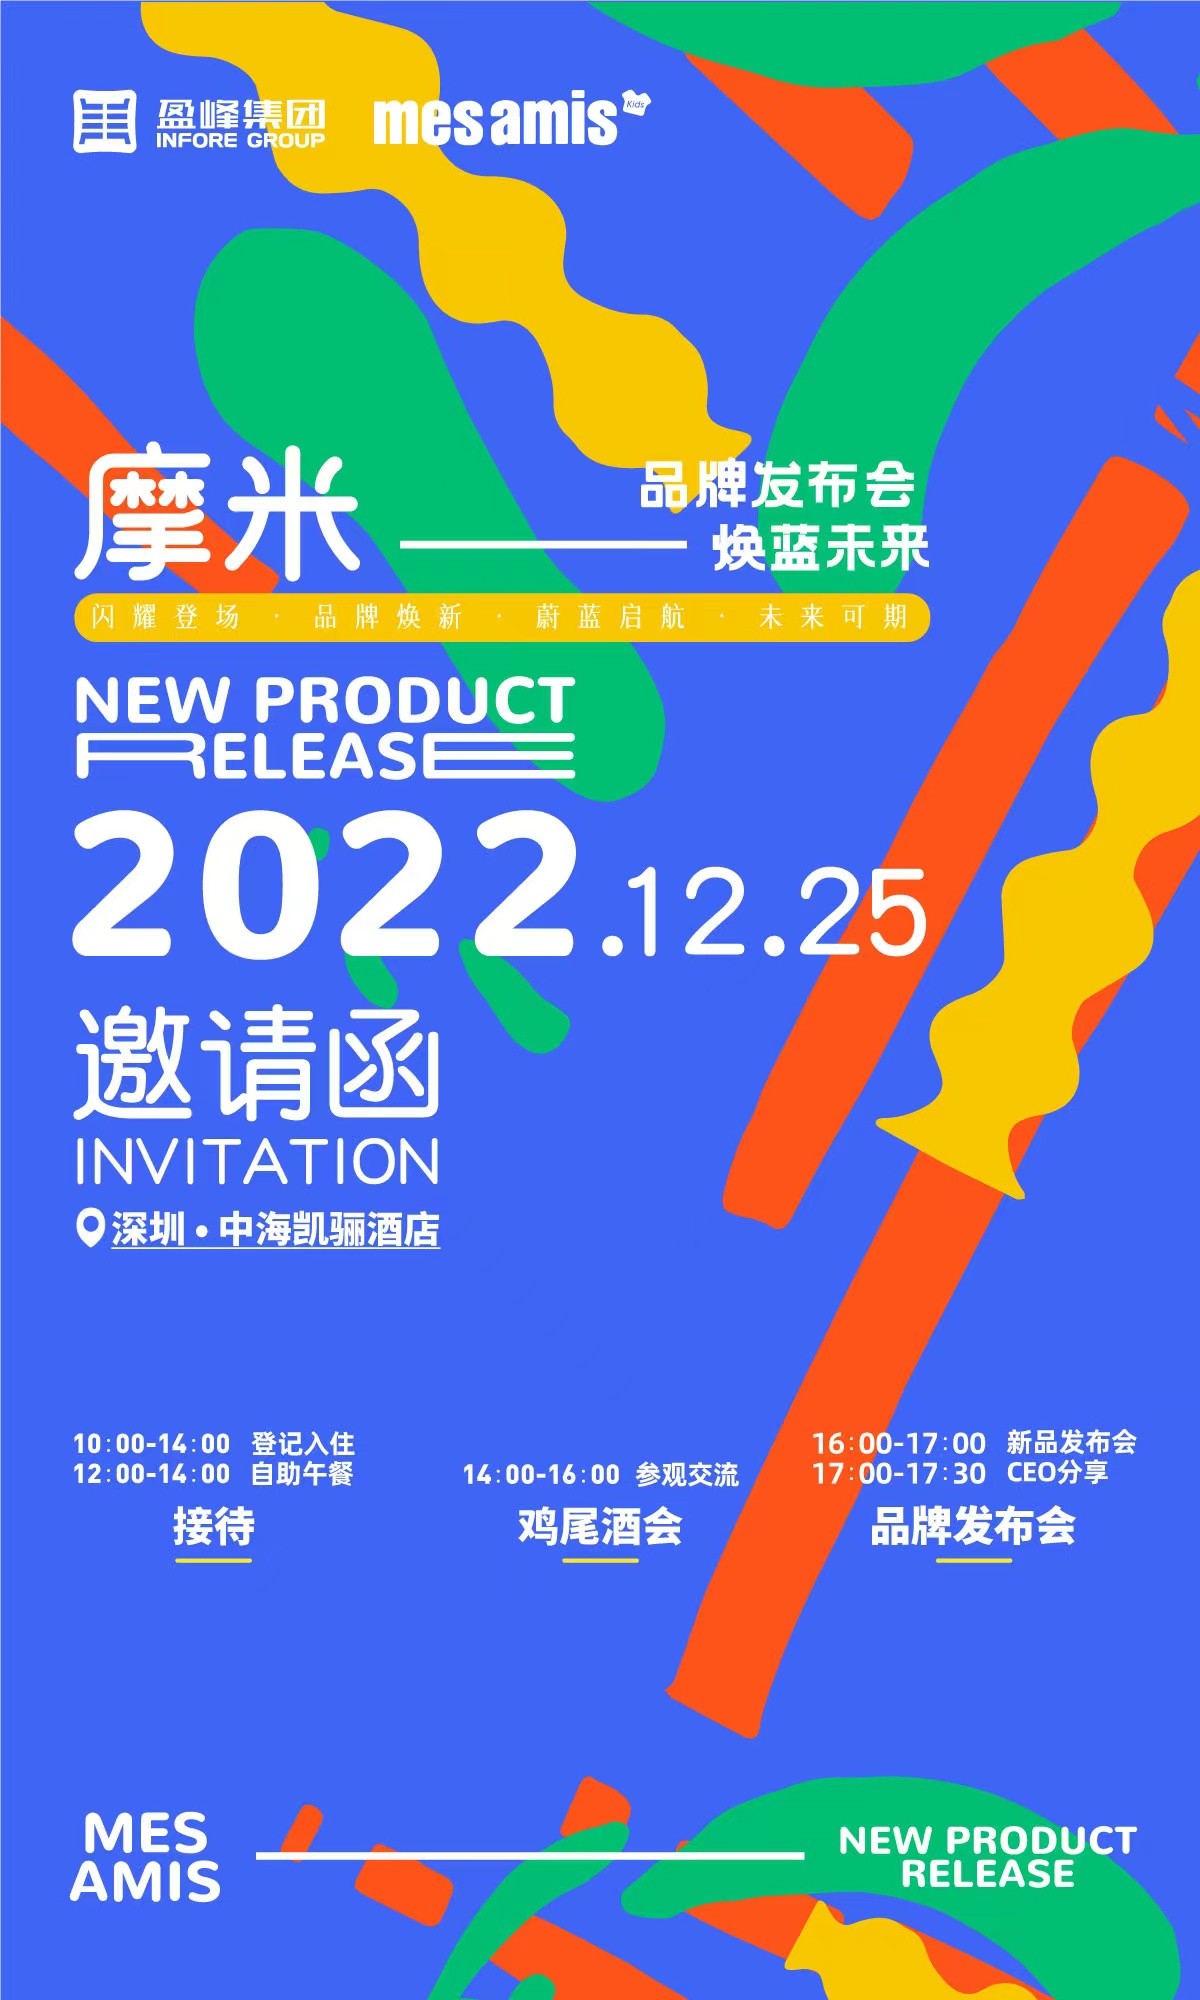 新需求 新摩米 摩米将发布2022年度品牌升级战略